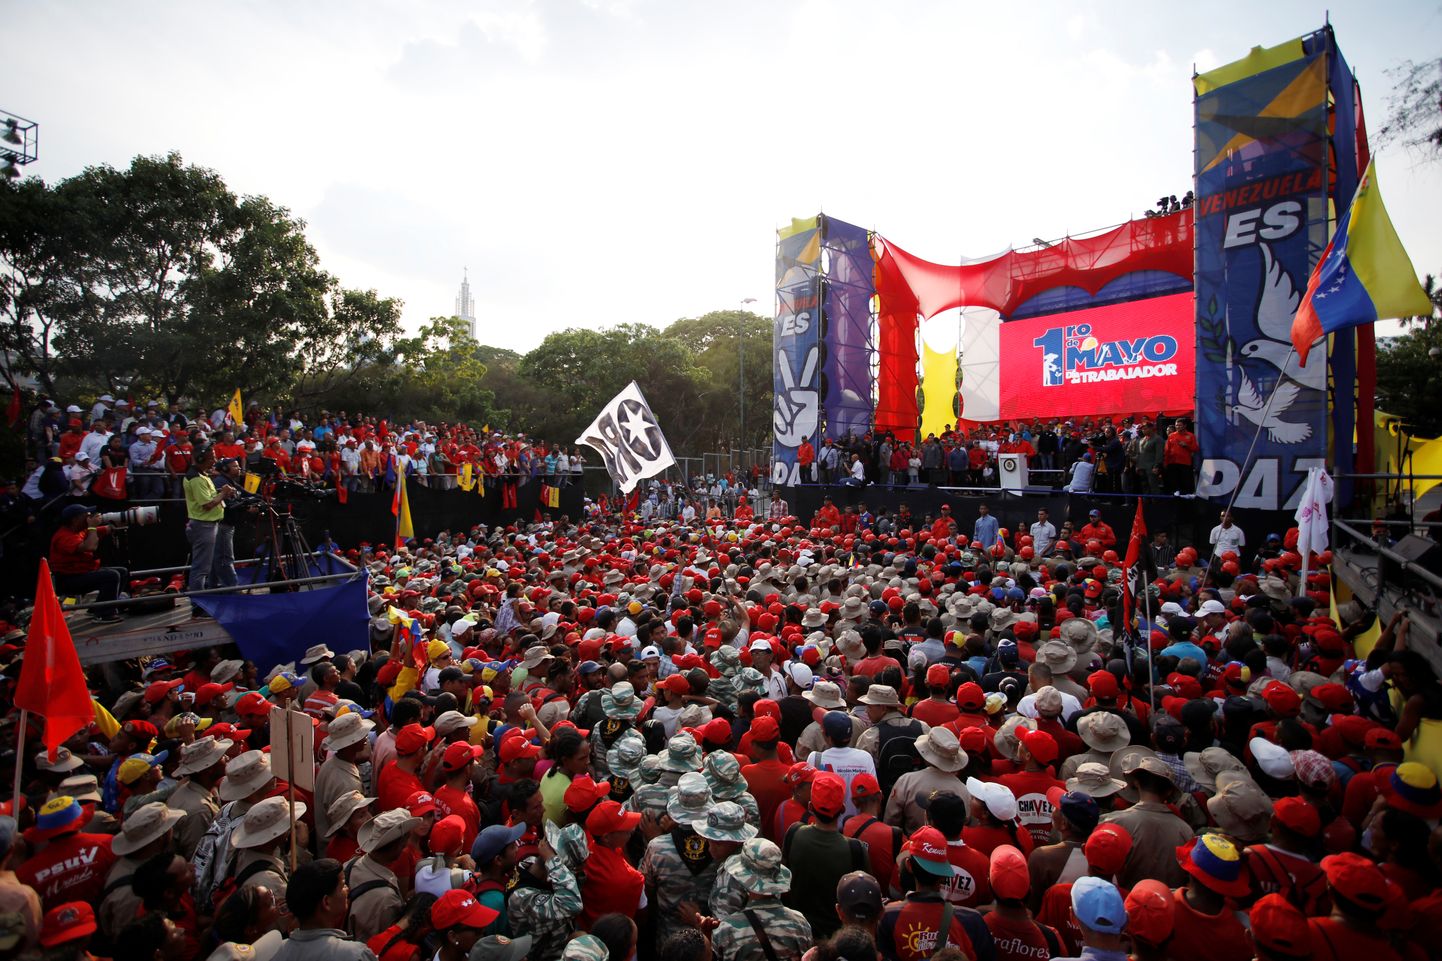 Venezuela president Nicolas Maduro kõneleb pealinnas oma toetajatele.